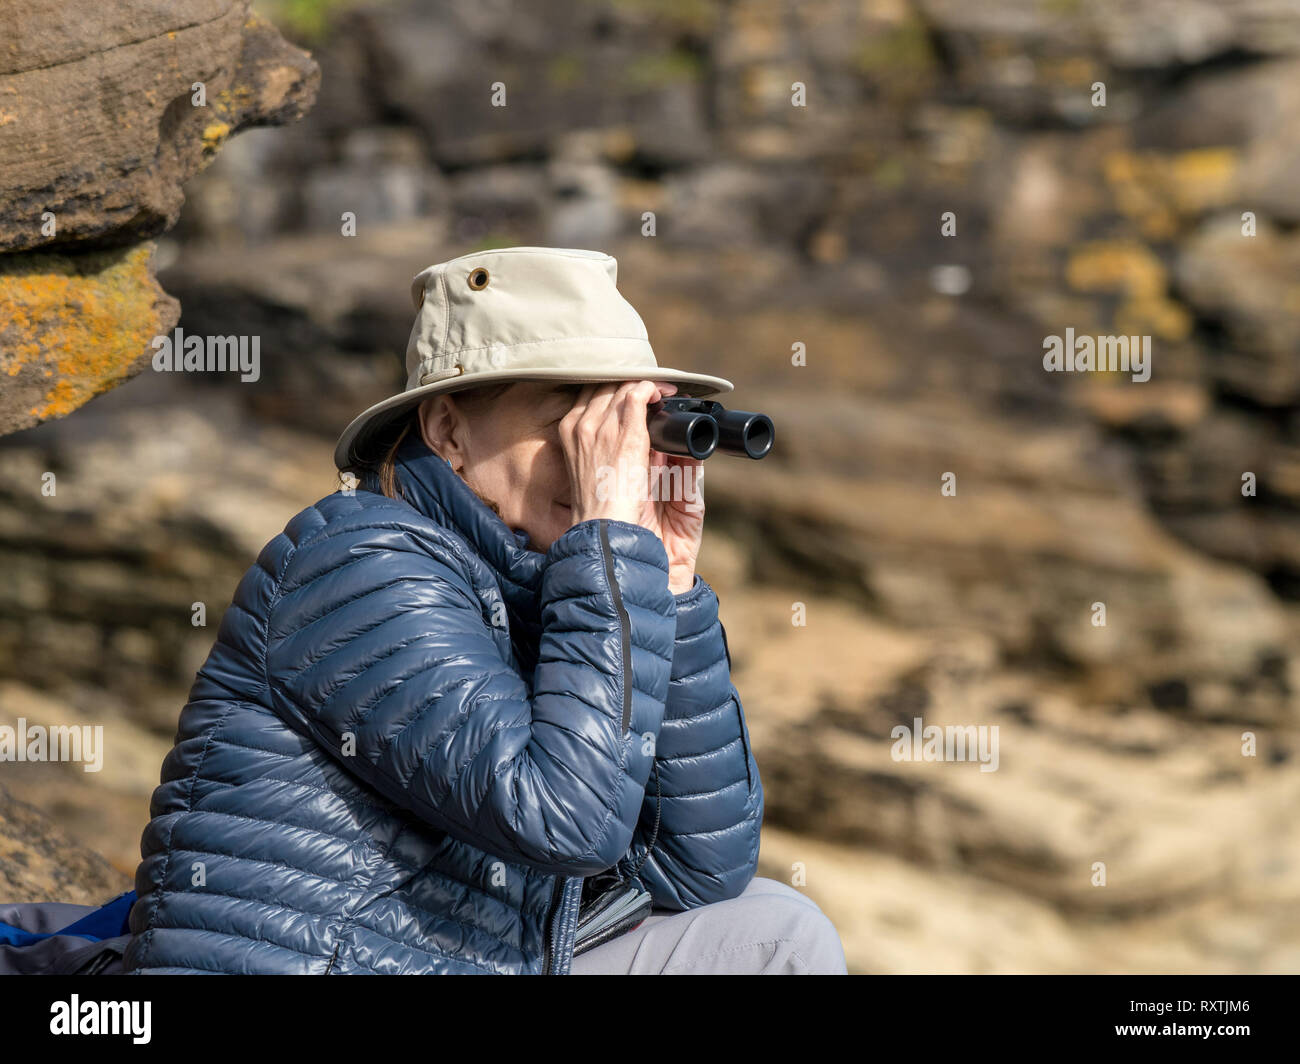 Erwachsene Frau mit Sonnenhut und gepolsterter Pufferjacke, die durch ein Fernglas schaut und wilde Tiere mit felsigen Klippen dahinter beobachtet, Isle of Skye, Schottland, Großbritannien Stockfoto